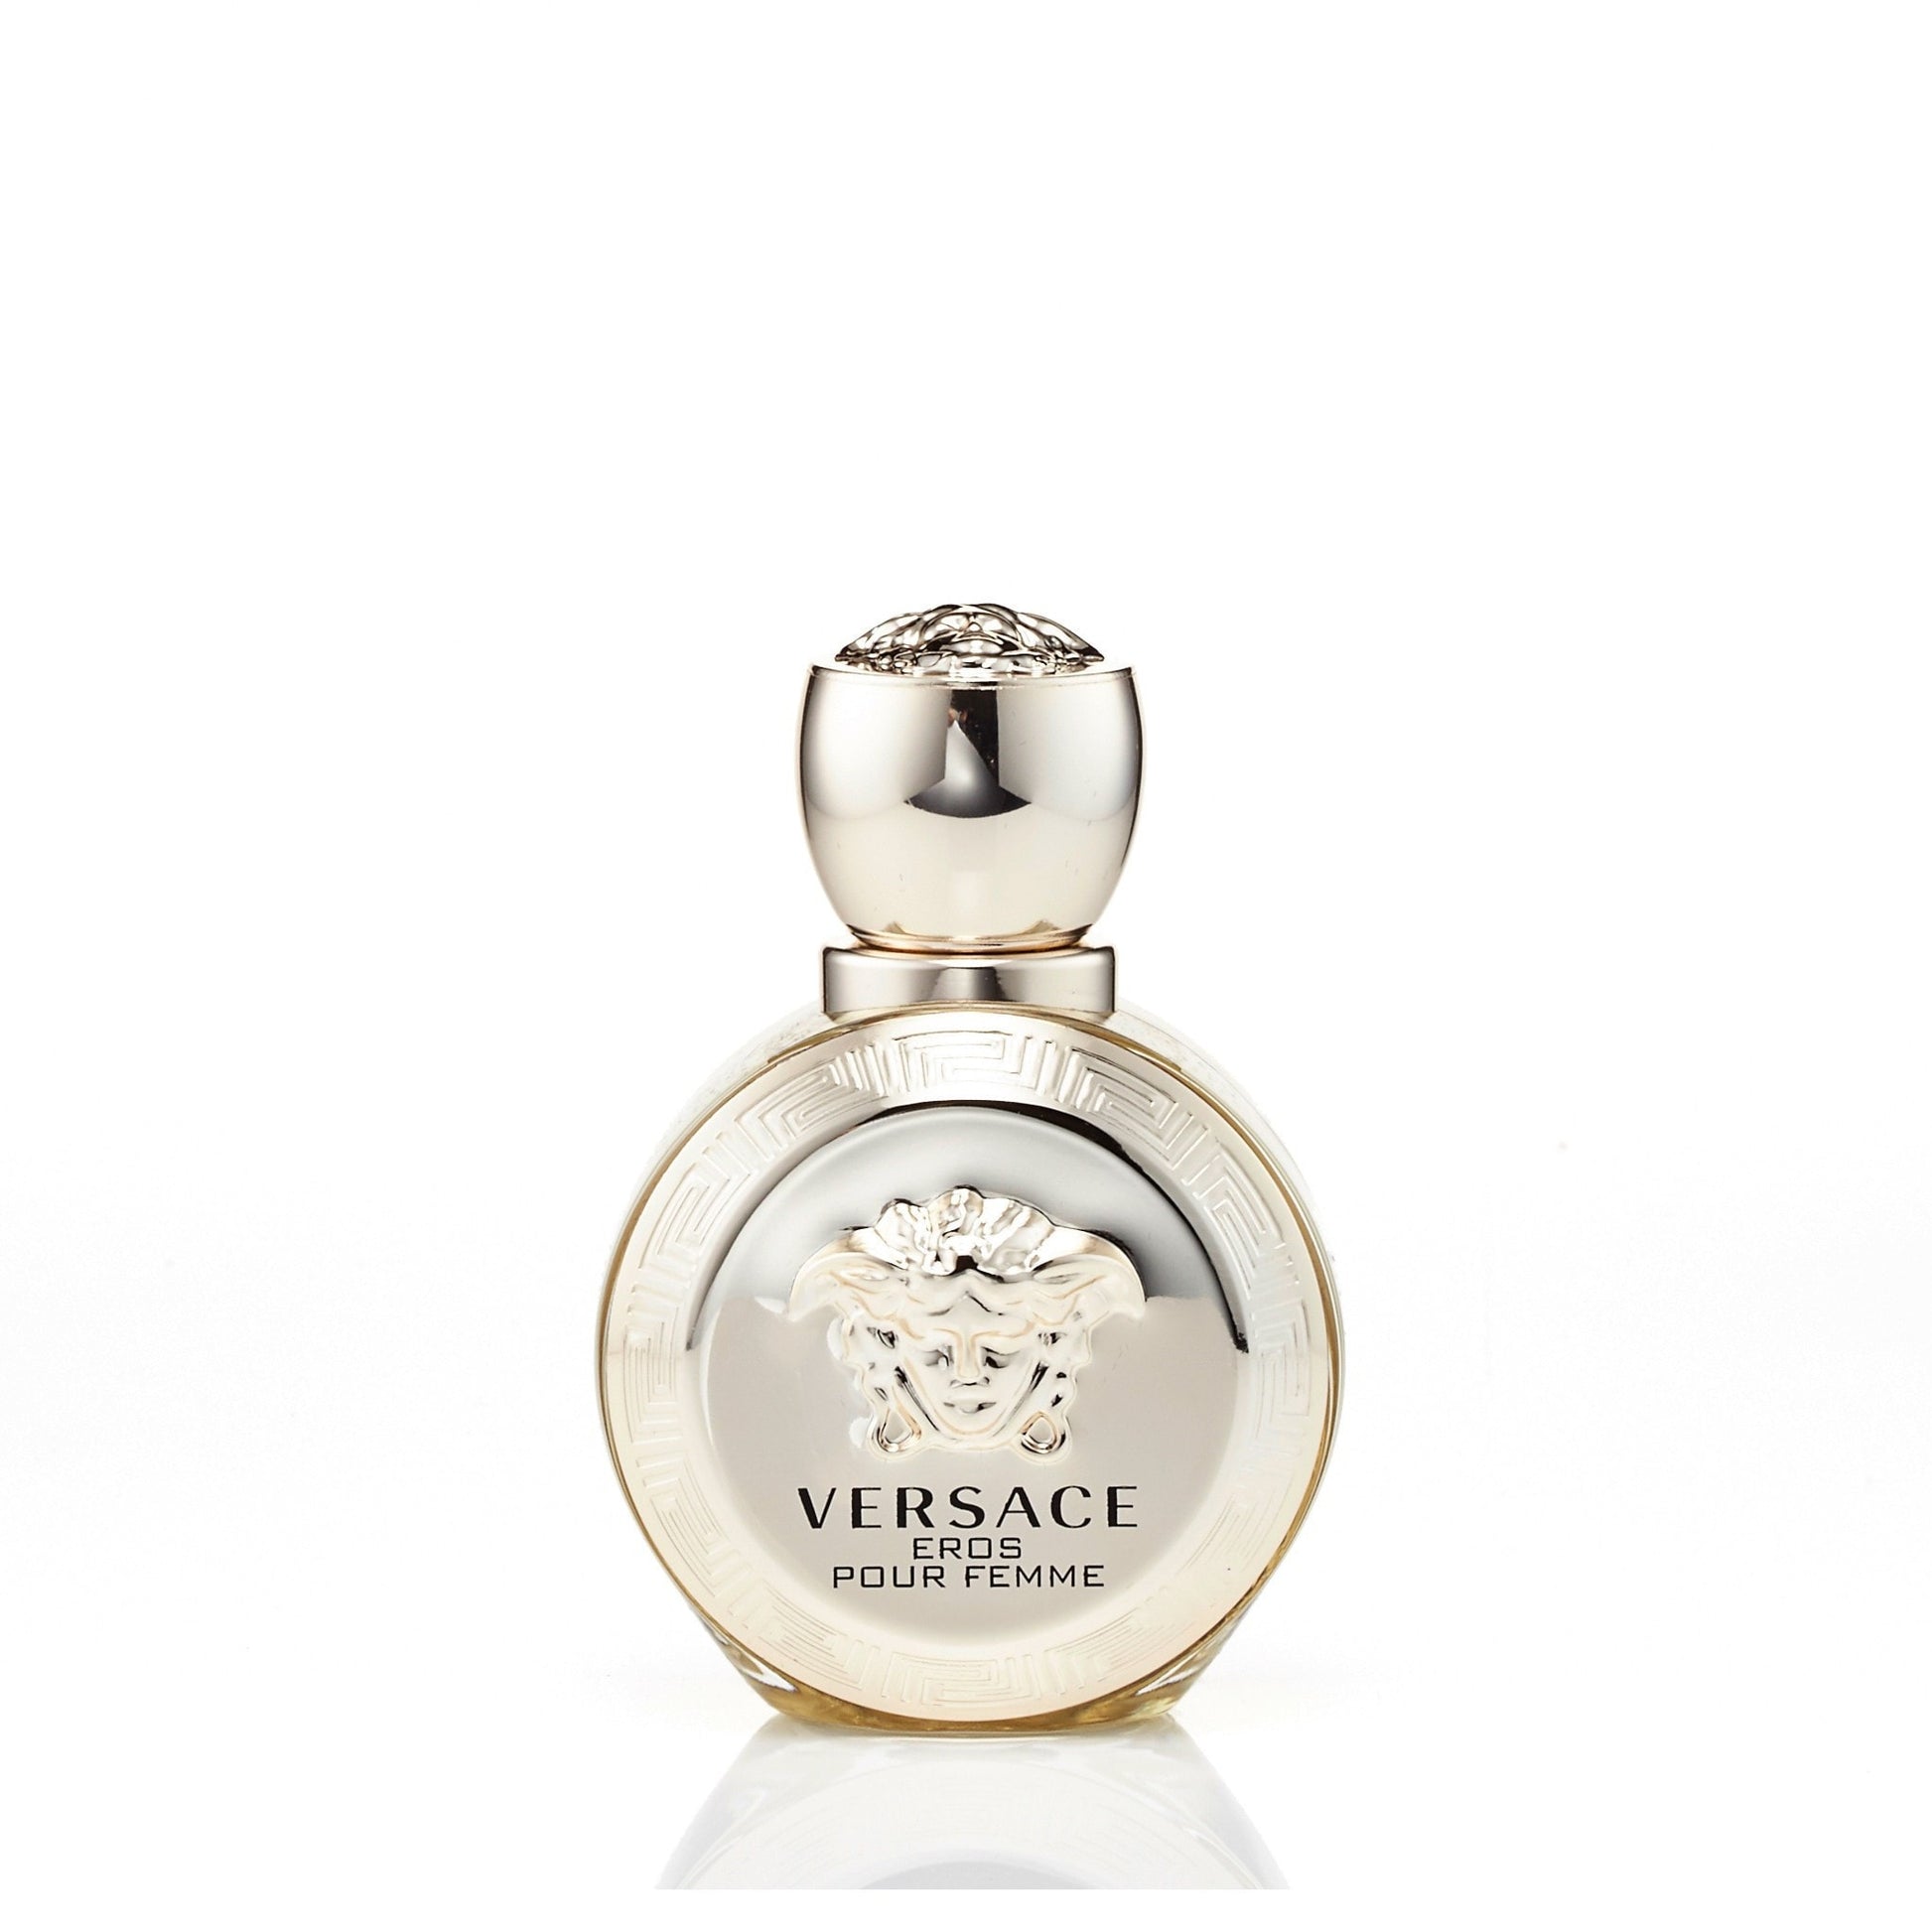 Versace Eros Eau de Parfum Womens Spray 1.7 oz.  Click to open in modal